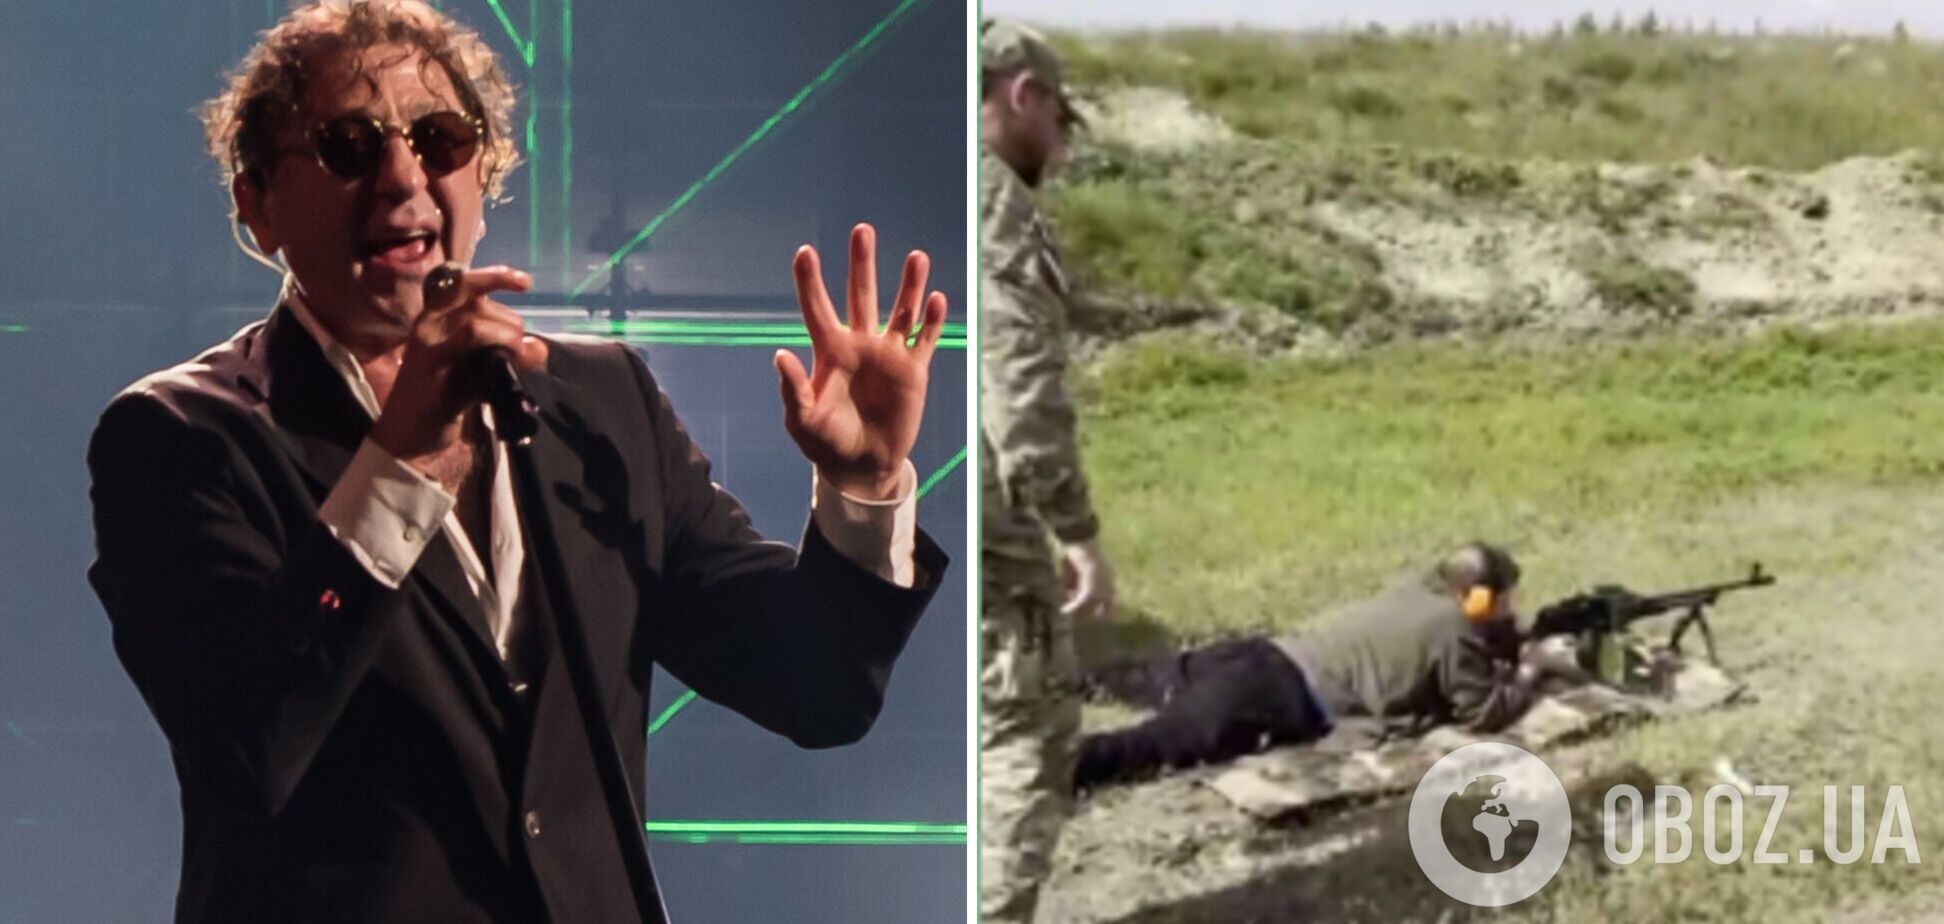 Пропутинский певец Лепс взял в руки оружие на Донбассе. Видео